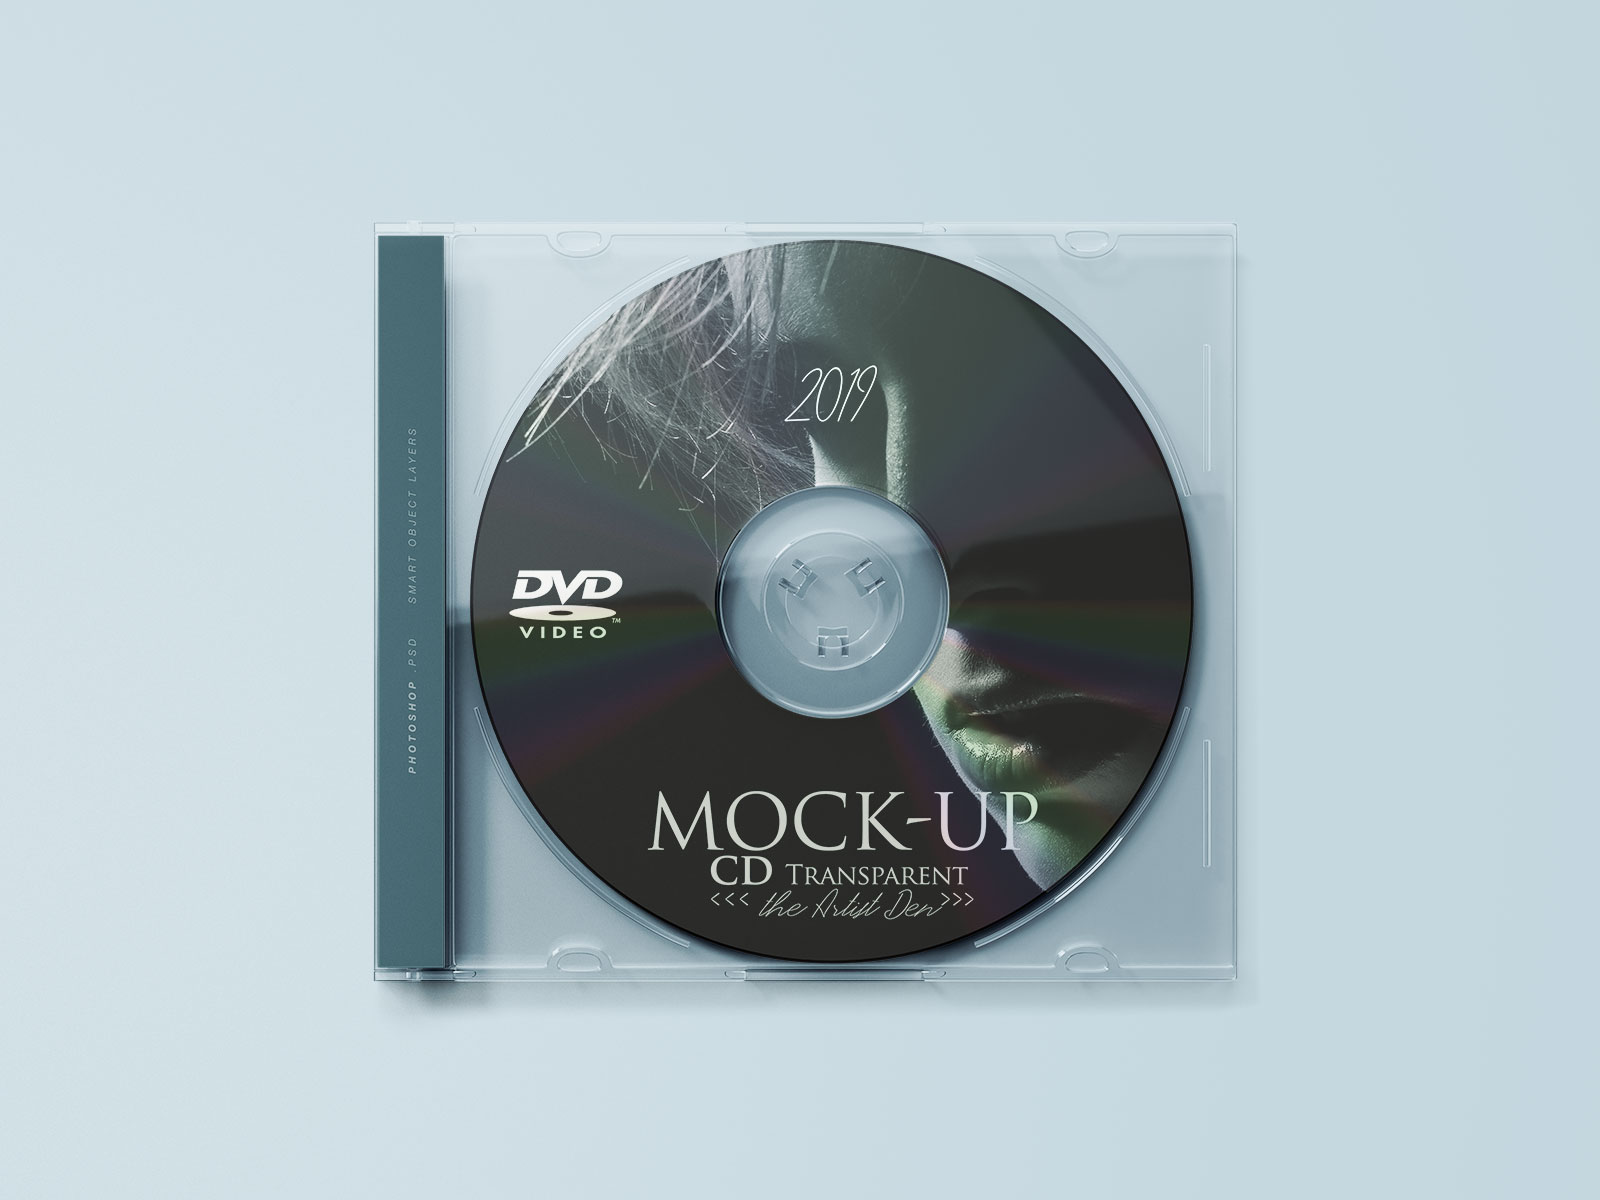 Couverture de CD transparente et maquette à disque